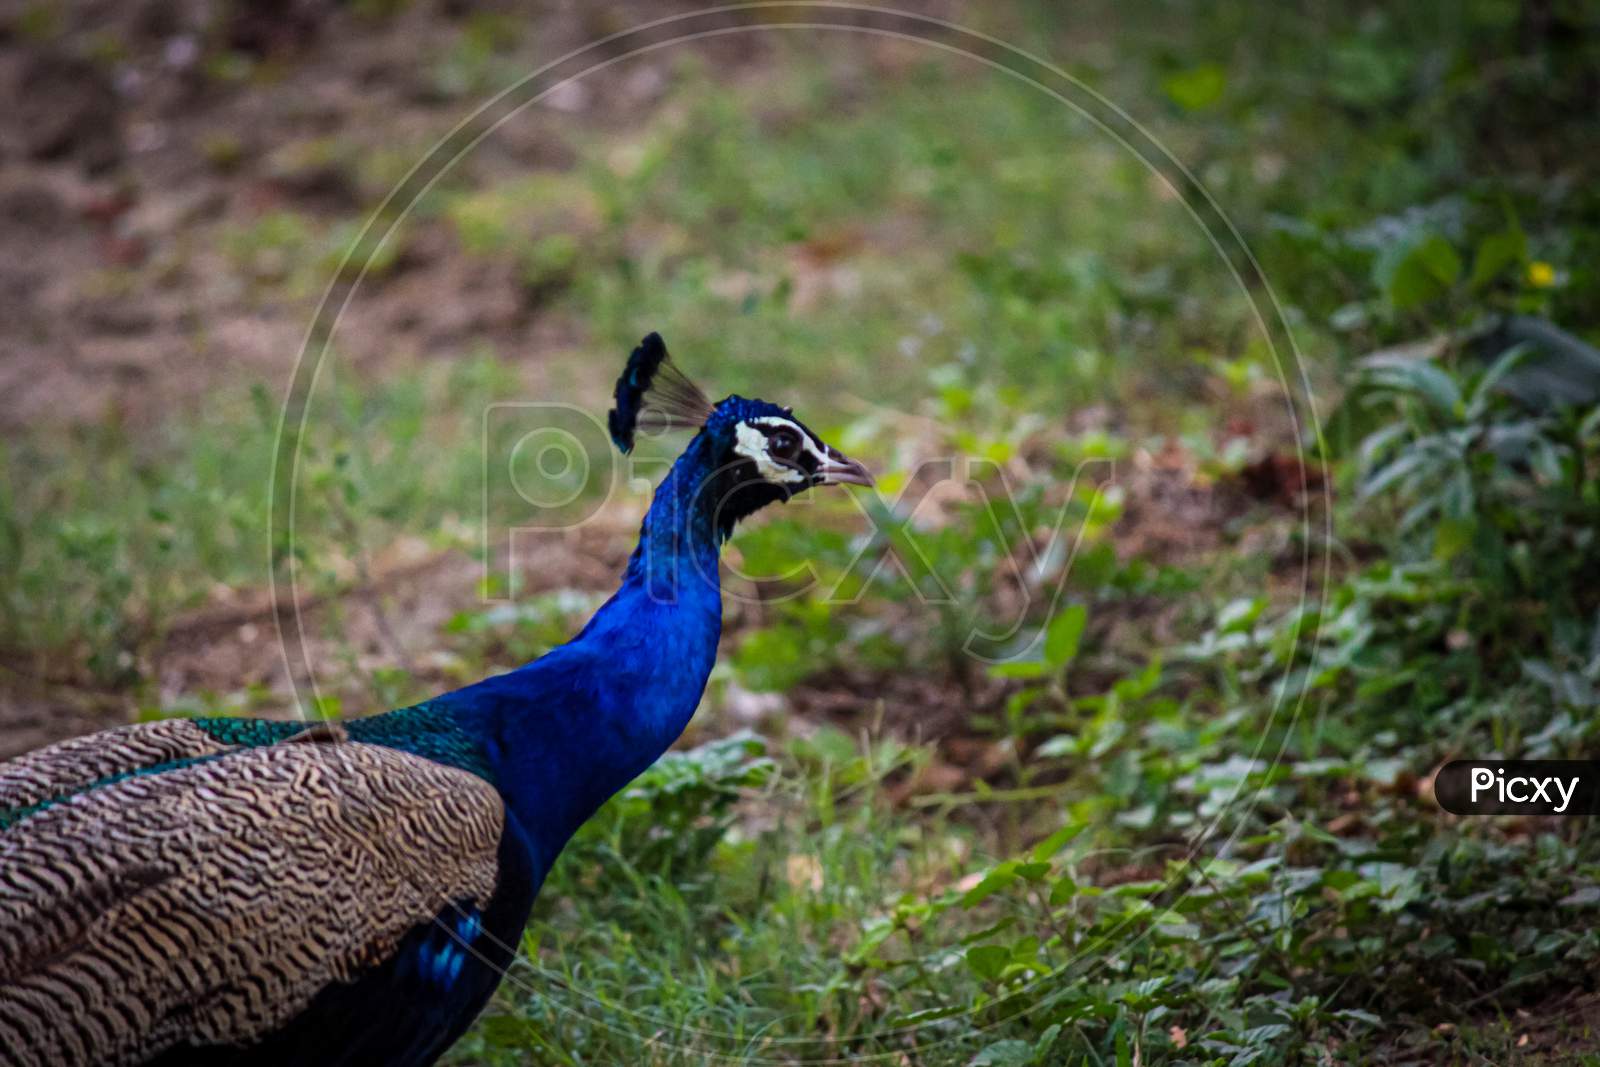 macro peacock shot in the park